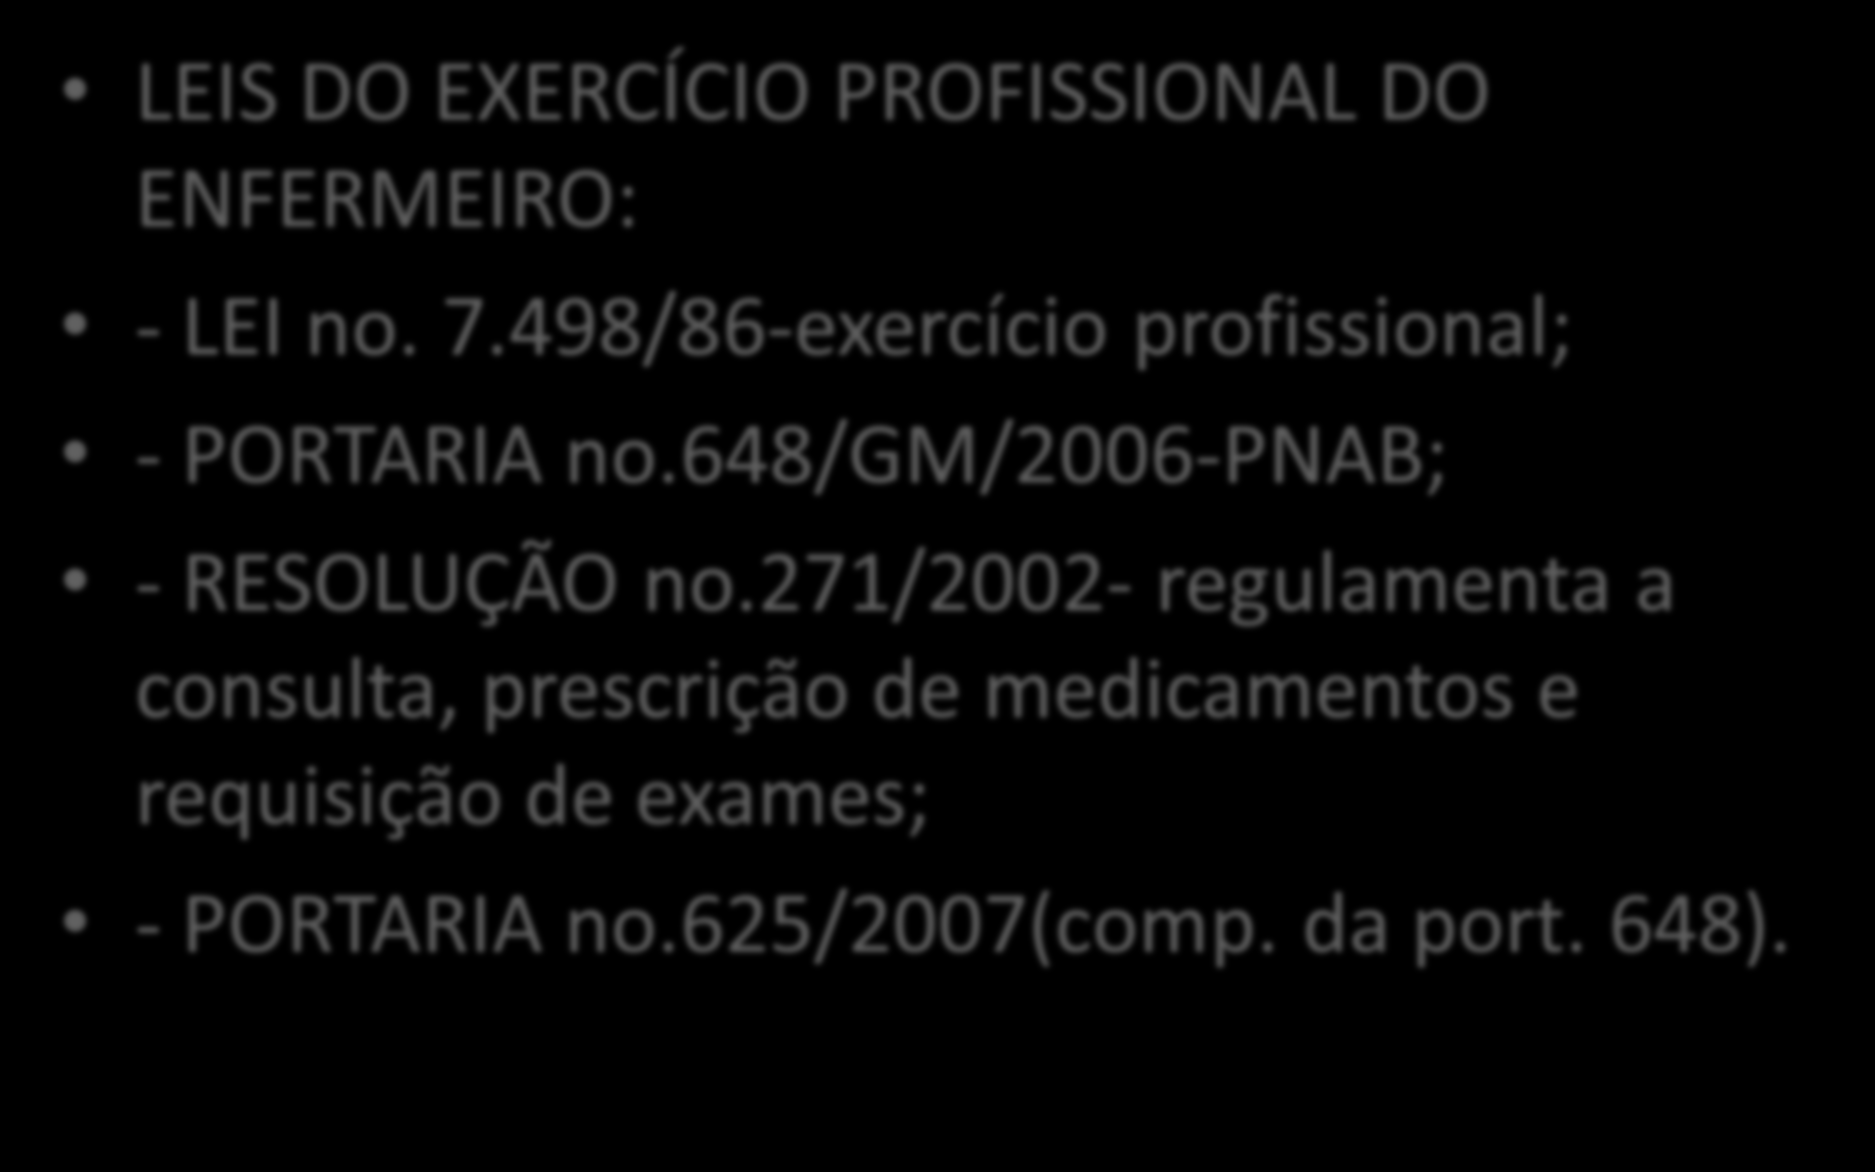 PAPEL DO ENFERMEIRO EM APS LEIS DO EXERCÍCIO PROFISSIONAL DO ENFERMEIRO: - LEI no. 7.498/86-exercício profissional; - PORTARIA no.